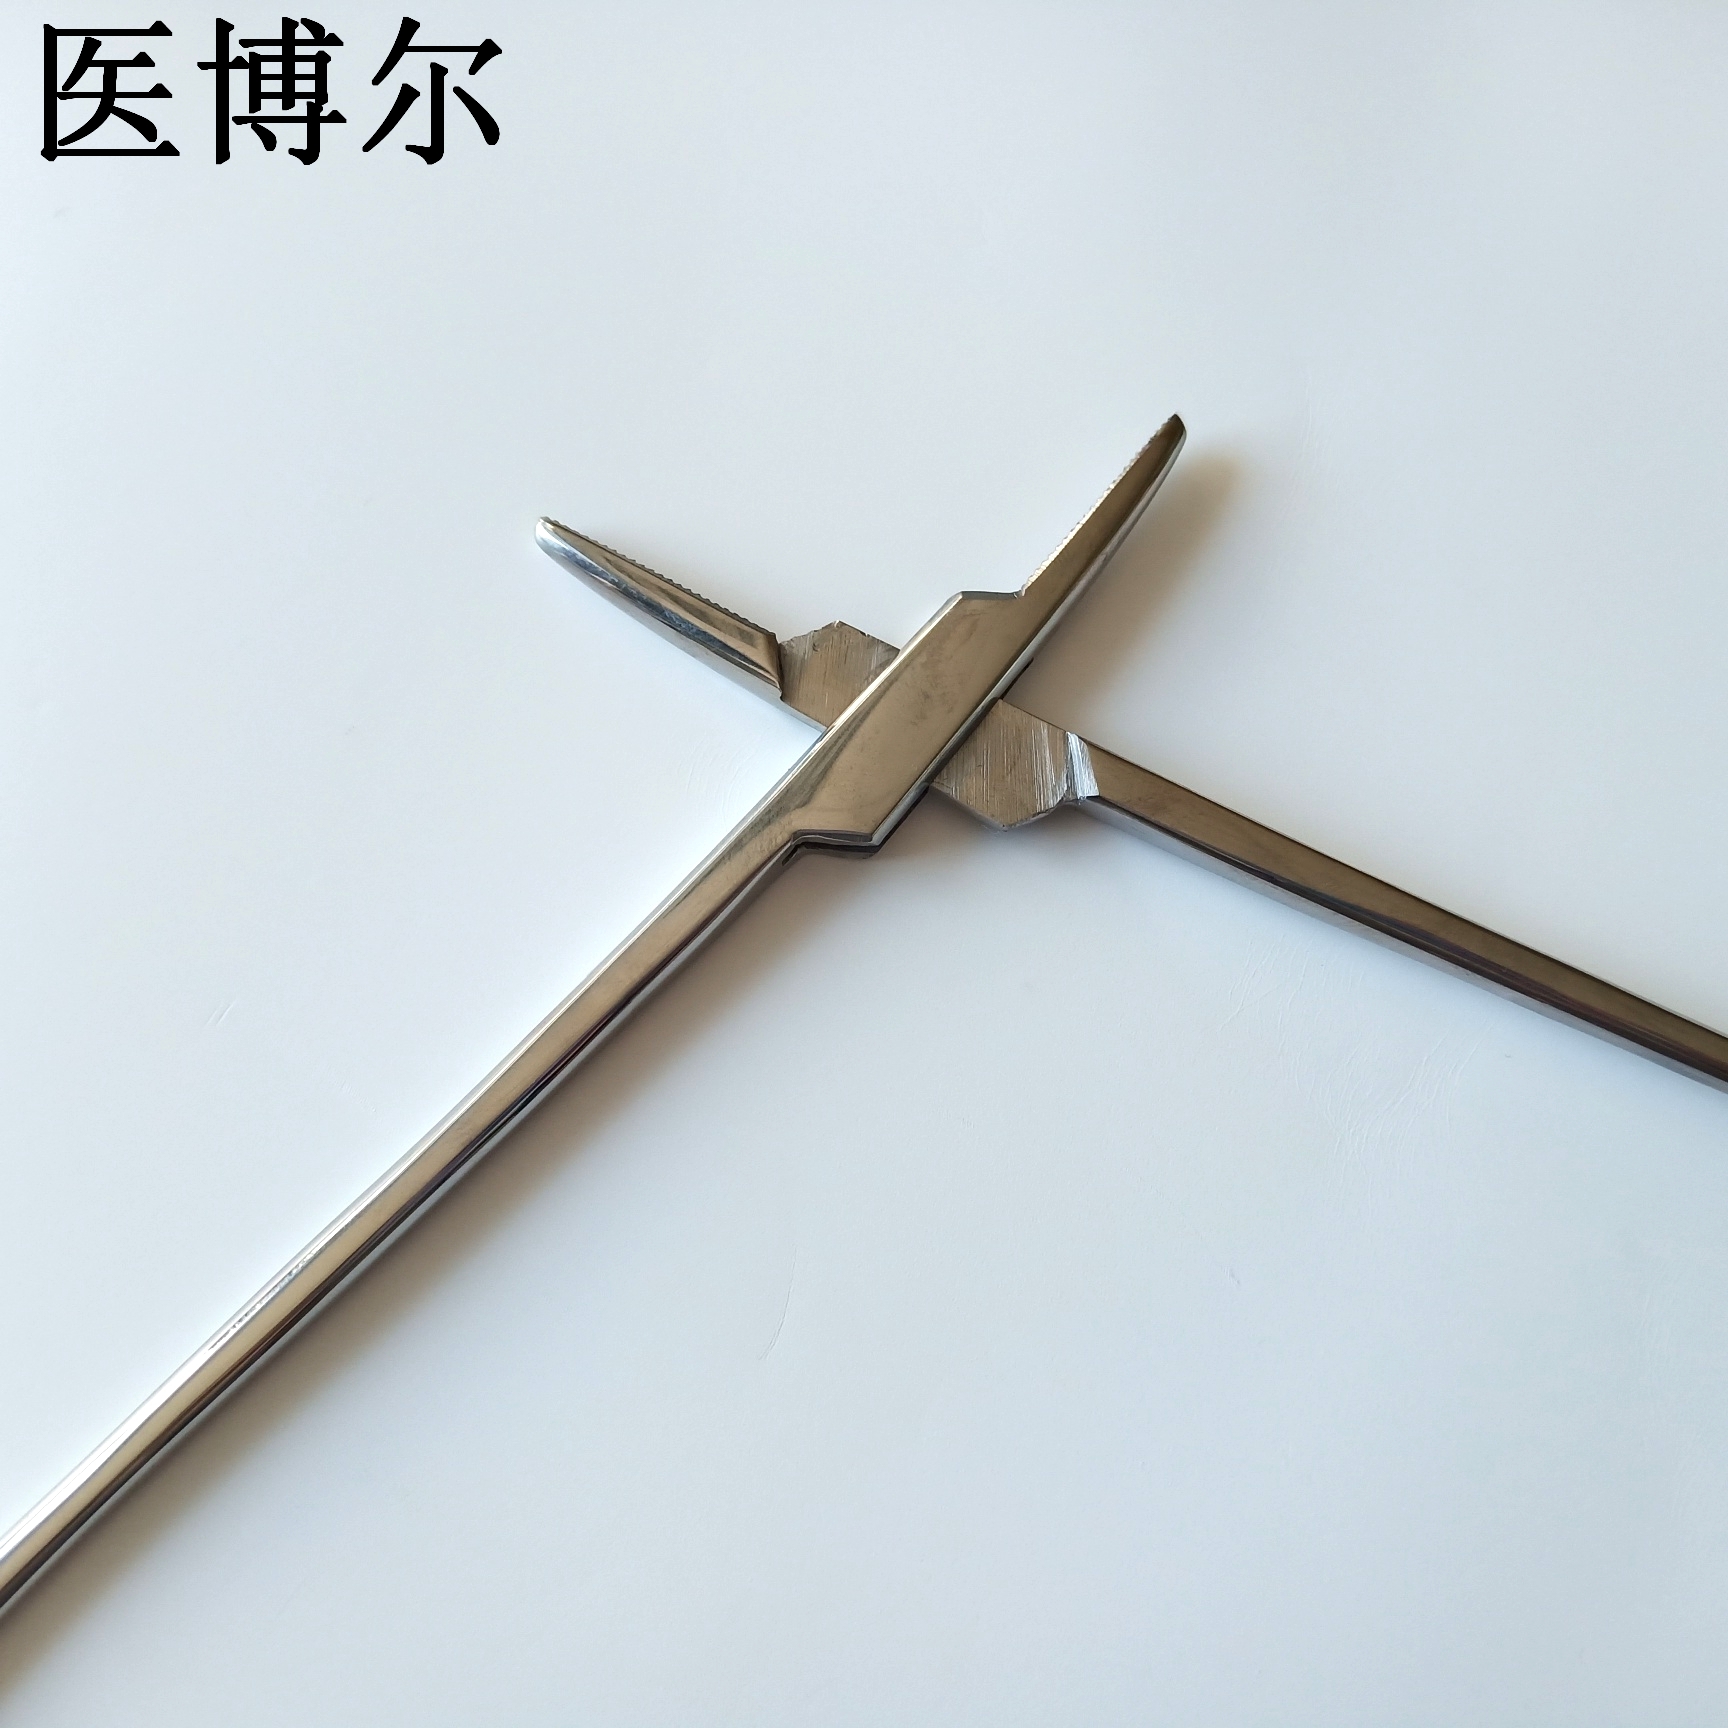 18cm粗针持针器 (8)_看图王.jpg